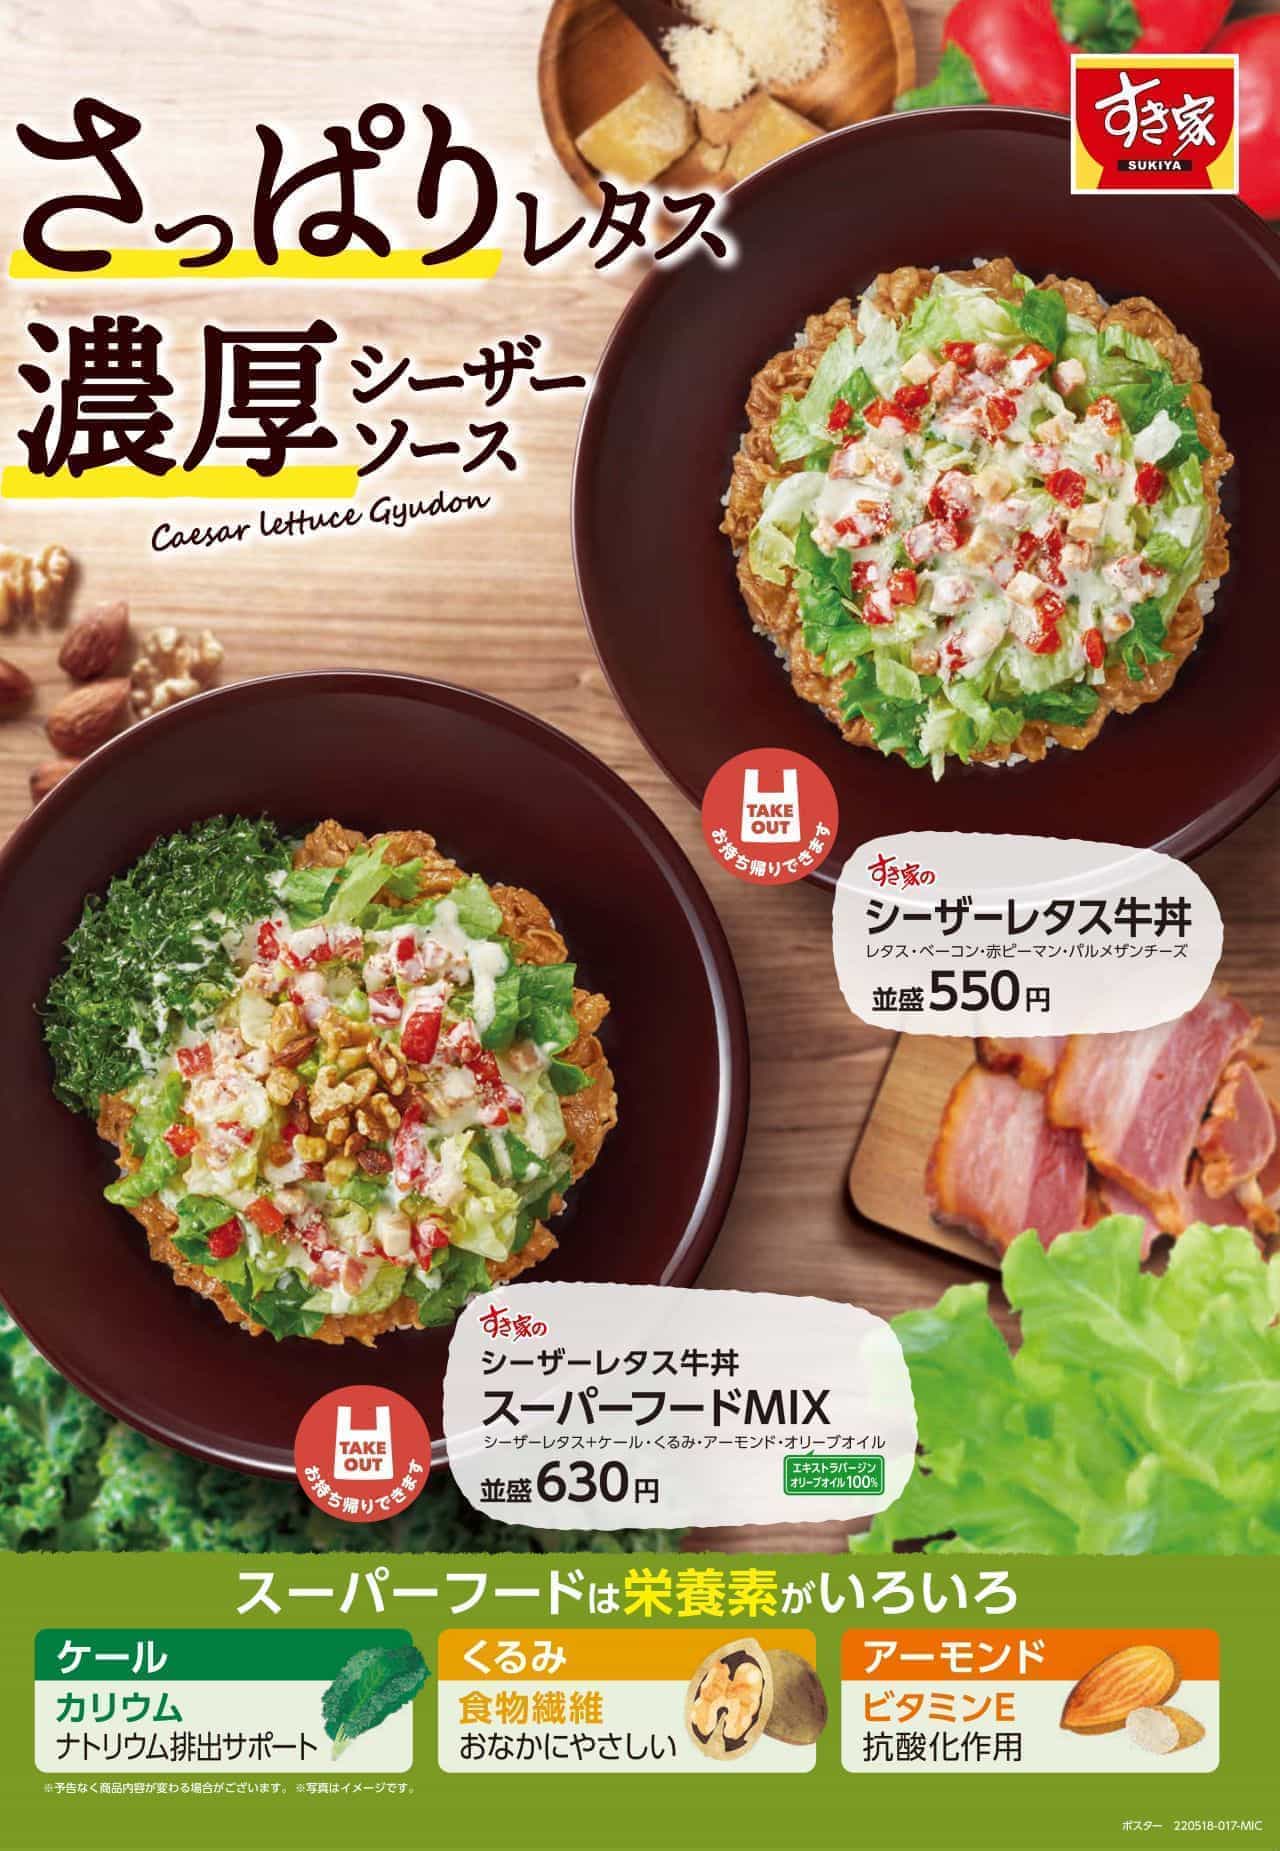 すき家「シーザーレタス牛丼」「シーザーレタス牛丼 スーパーフードMIX」